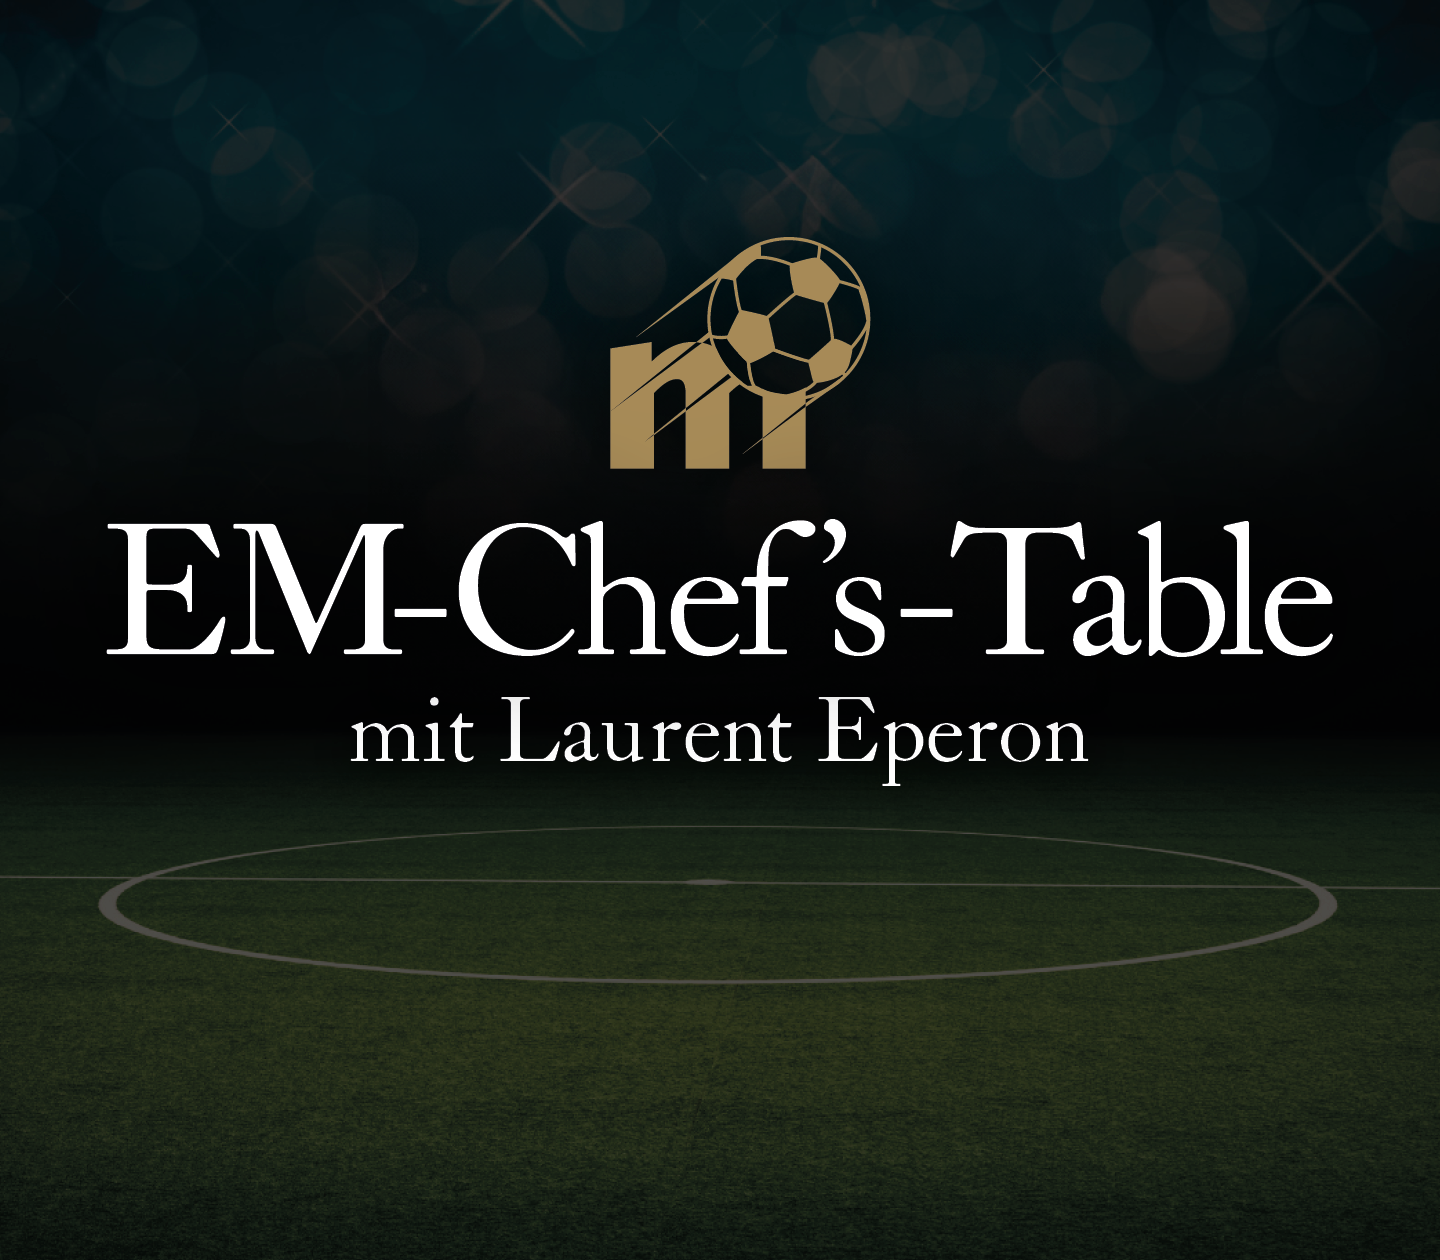 EM-Chef's-Table   VIERTELFINAL